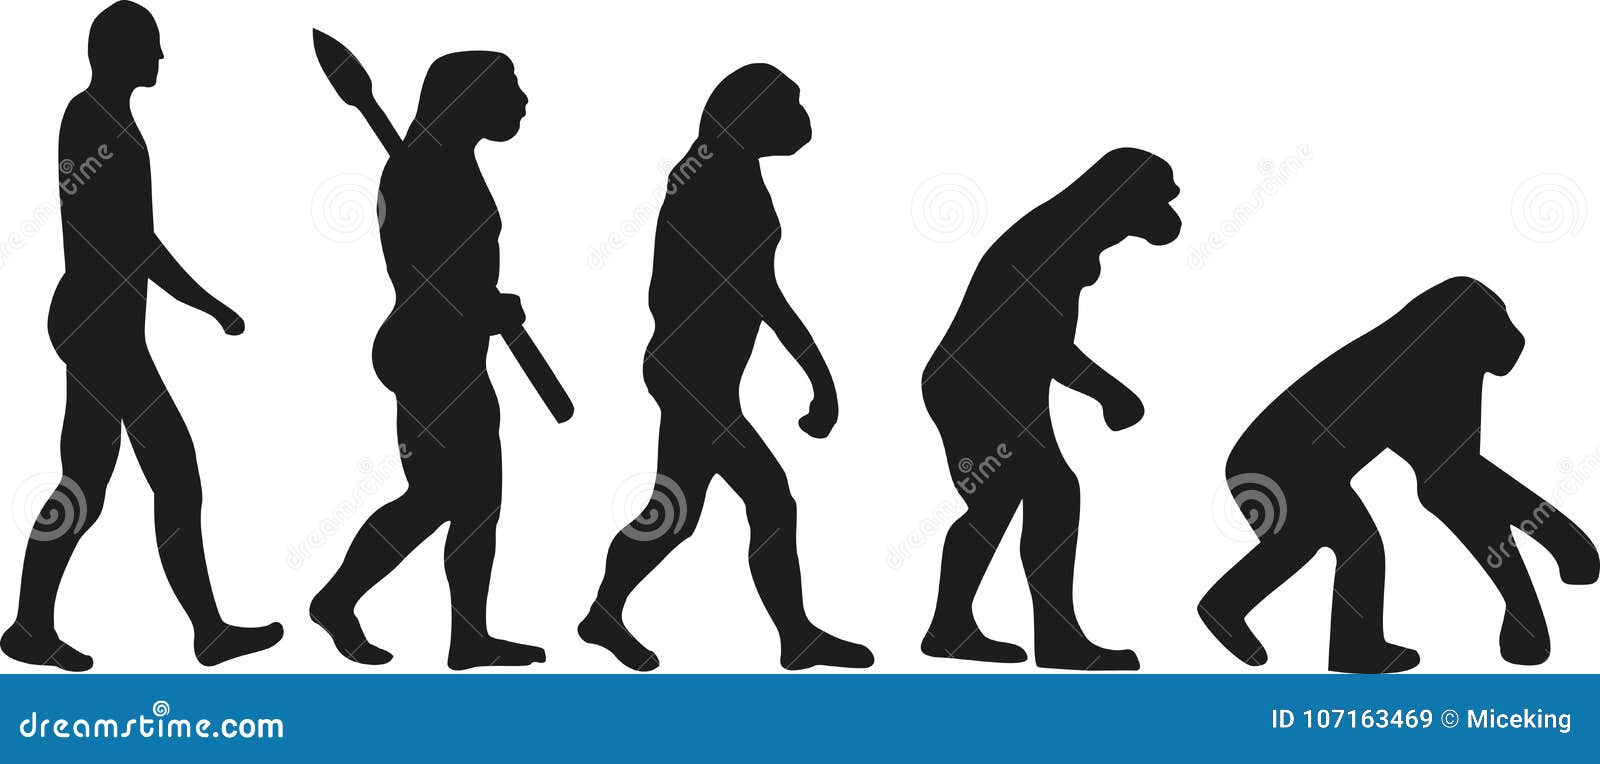 Эволюционирует ли человек. Эволюция. Обратная Эволюция человека. Эволюция человека в обратную сторону. Эволюция иллюстрация.